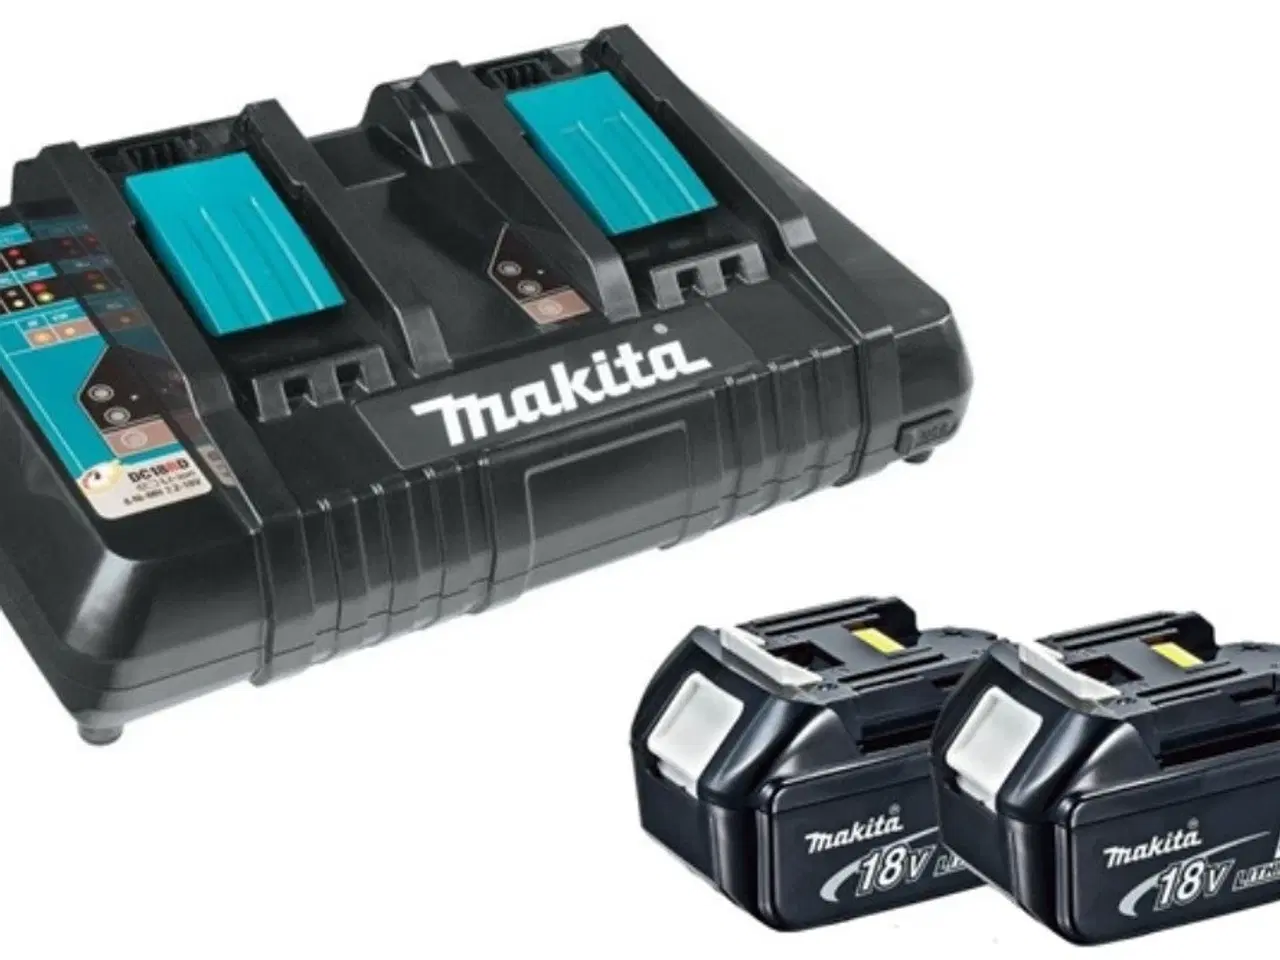 Billede 1 - Makita Batteri Oplader. m. 2x Batteri (udlejes) 